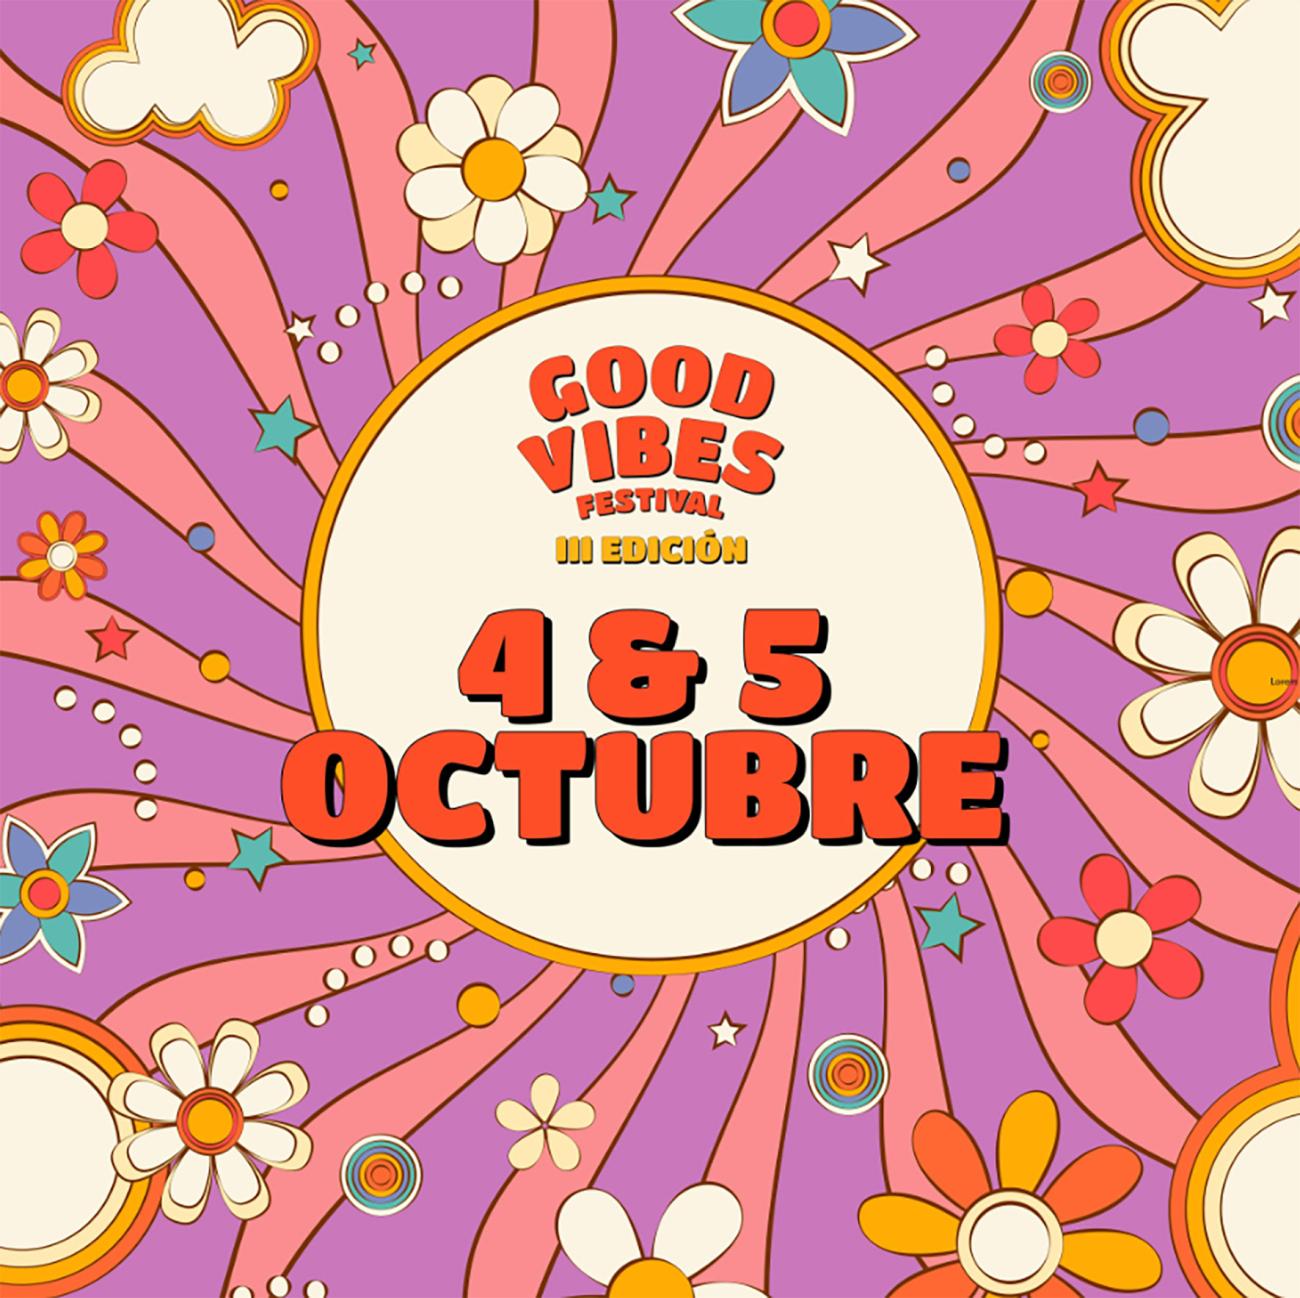 La tercera edición del Good Vibes Festival se celebrará el 4 y 5 de octubre